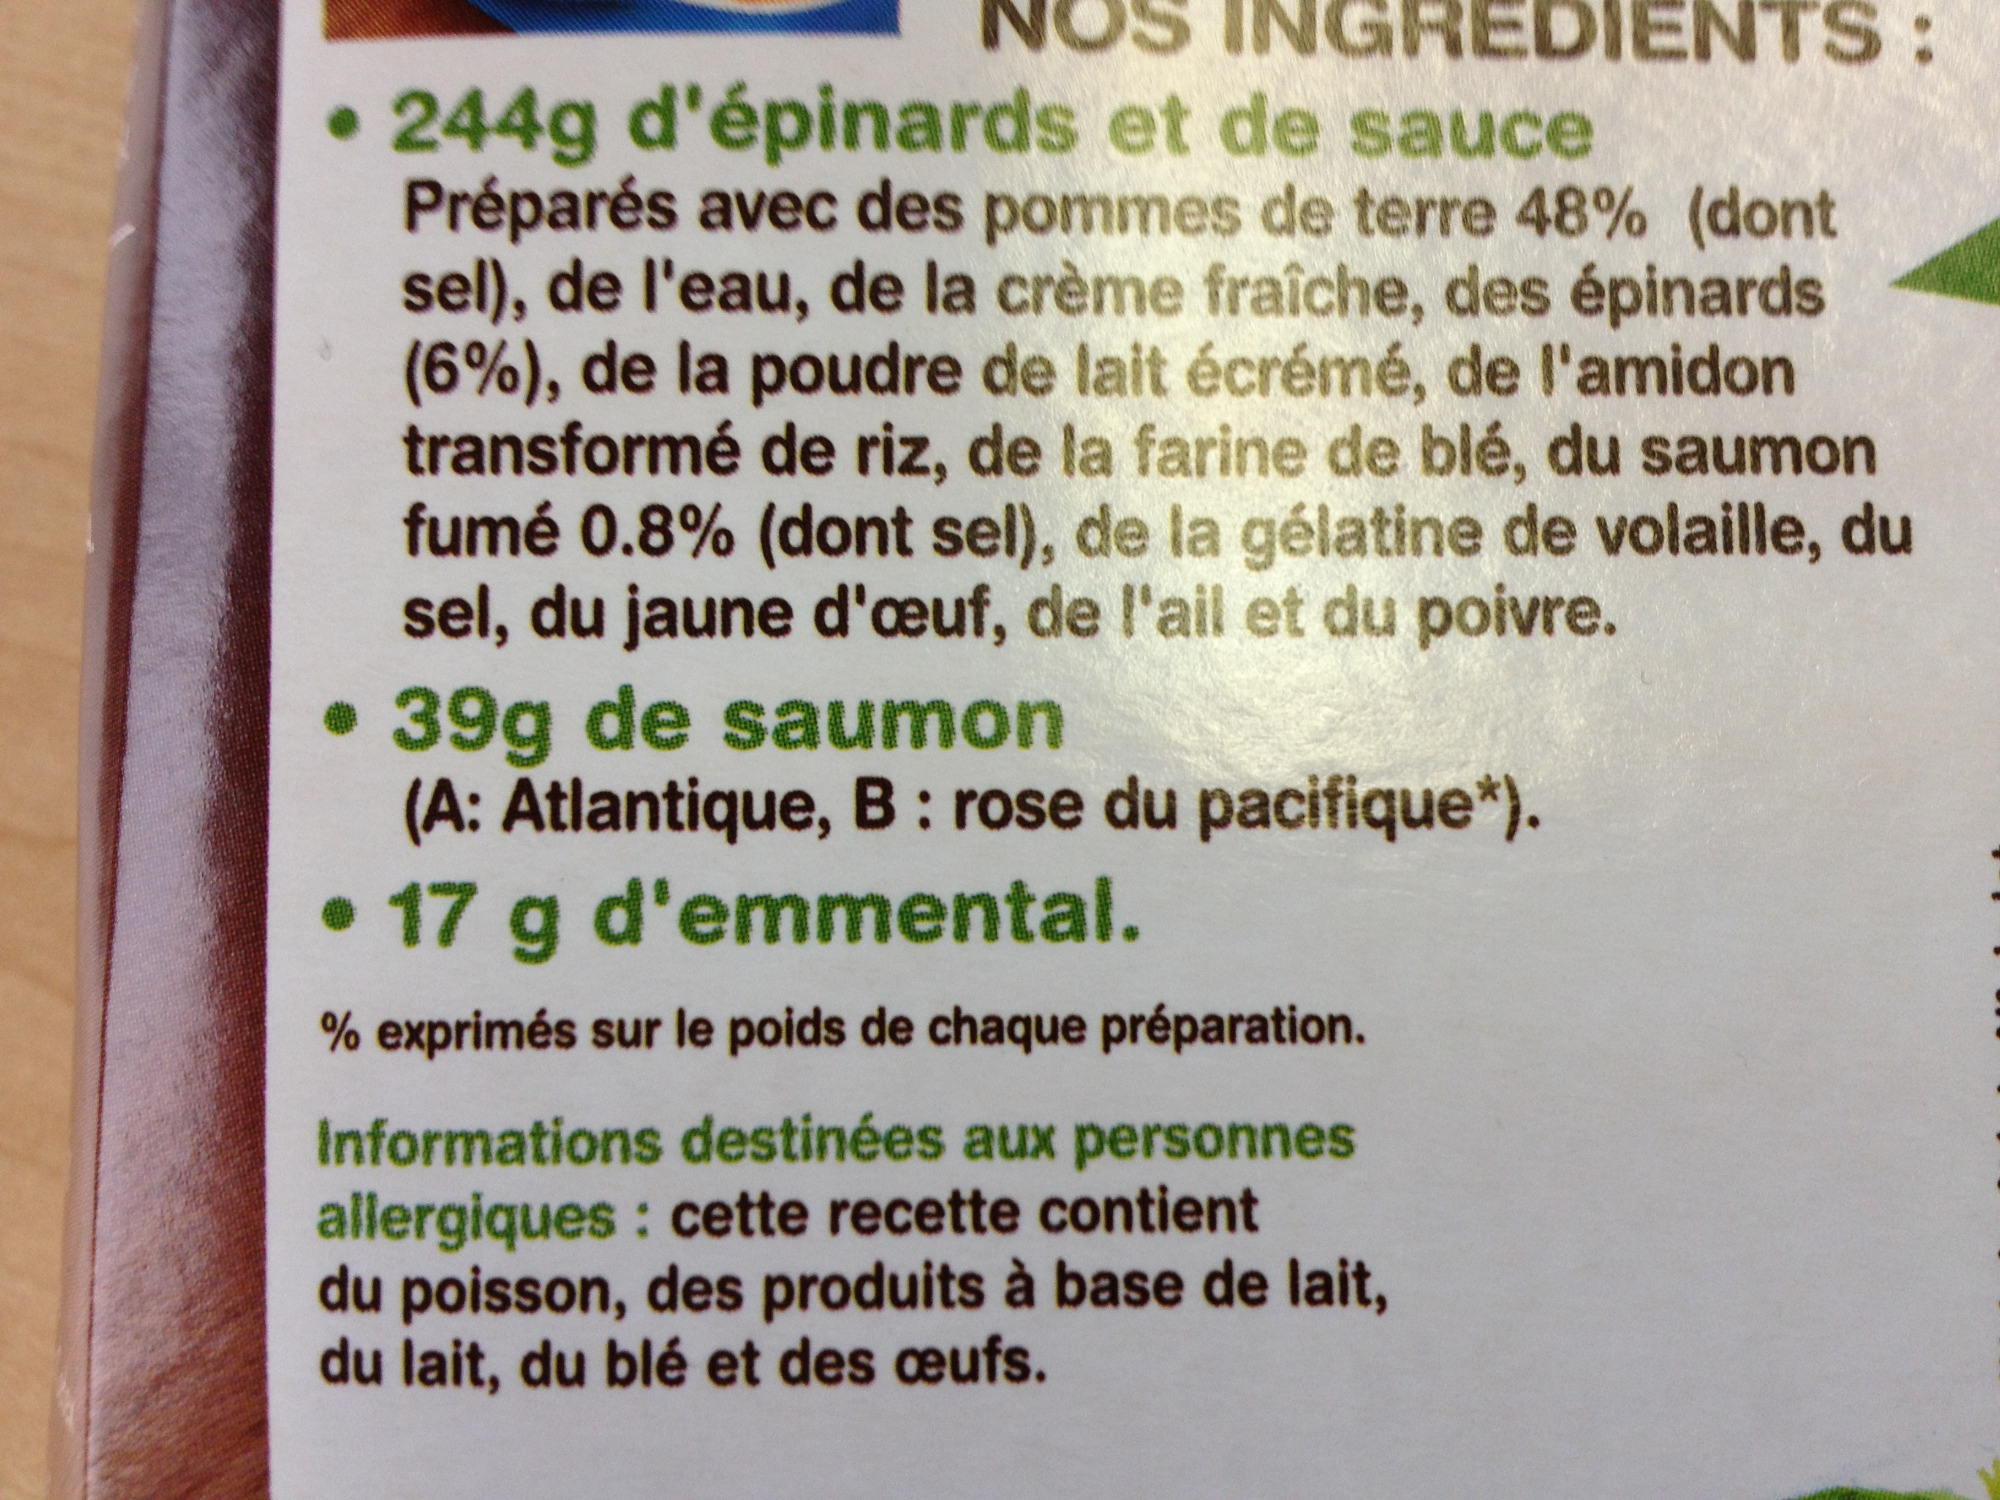 Gratin de pommes de terre saumon* épinards - Ingrédients